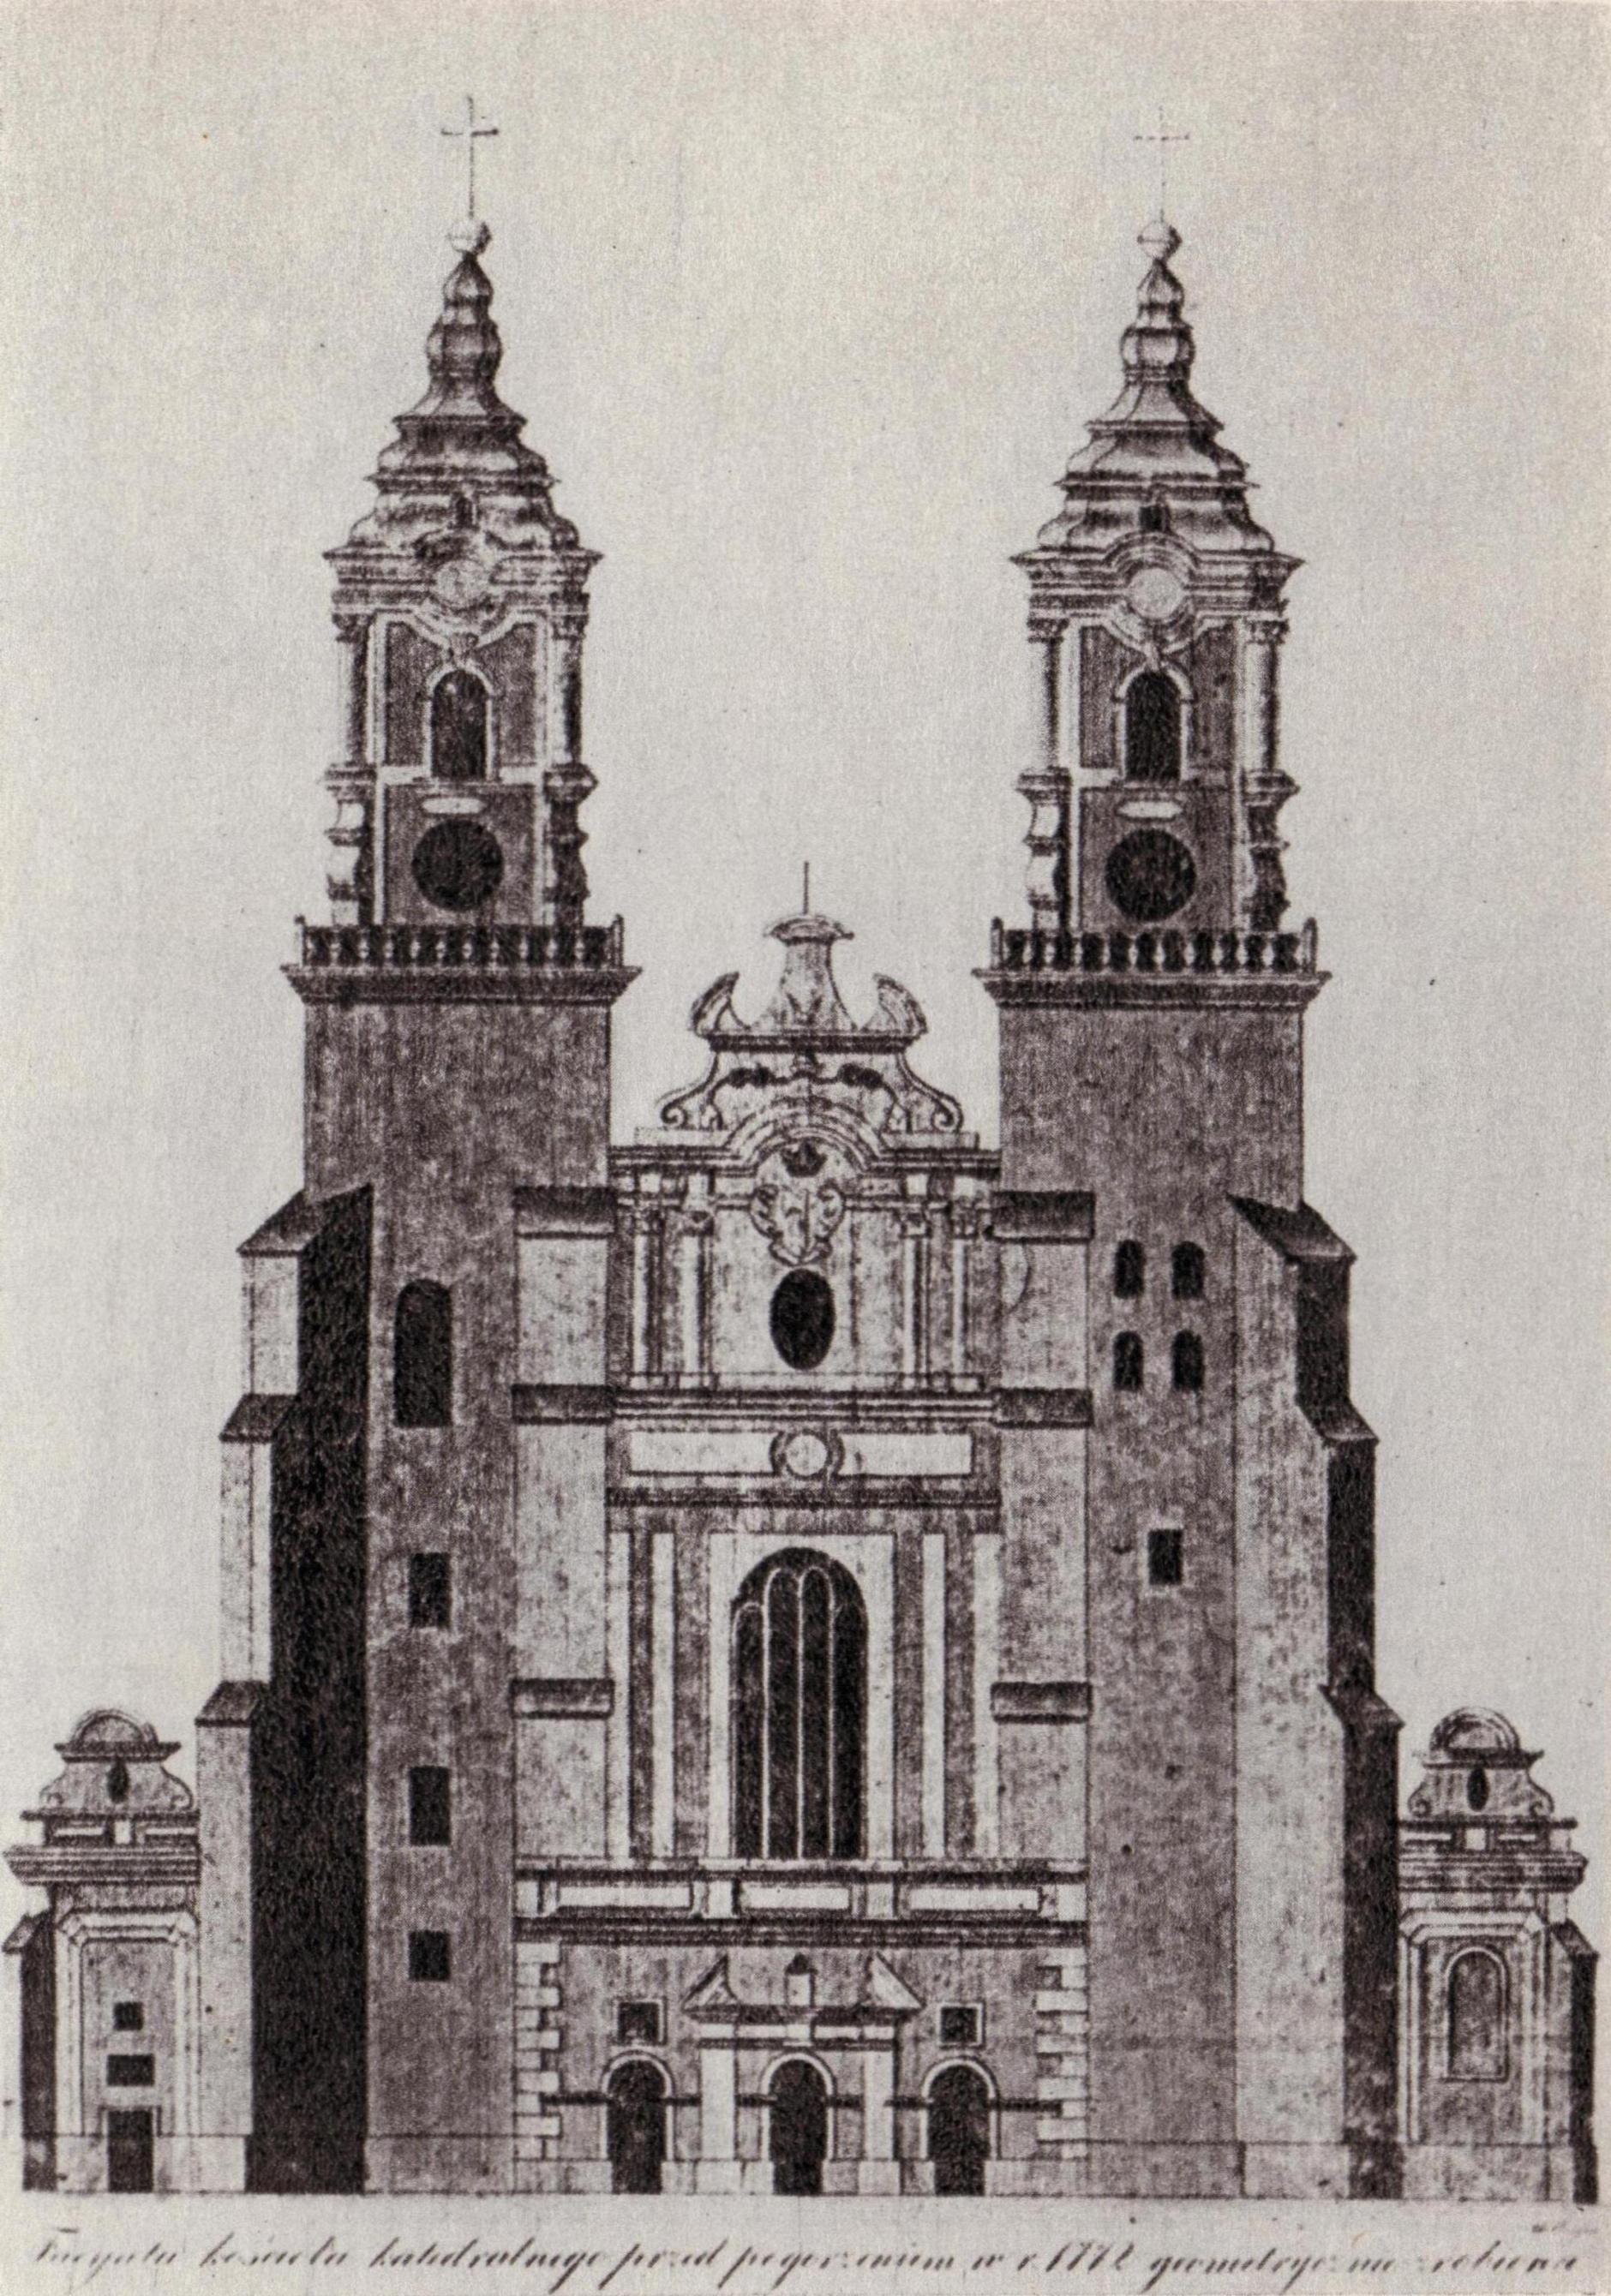 (1761-1771) Fasada zachodnia katedry z barokowymi wieżami. Podpis oryginalny: Facyata kościoła katedralnego przed pogorzeniem w r. 1772 geometrycznie zrobiona.